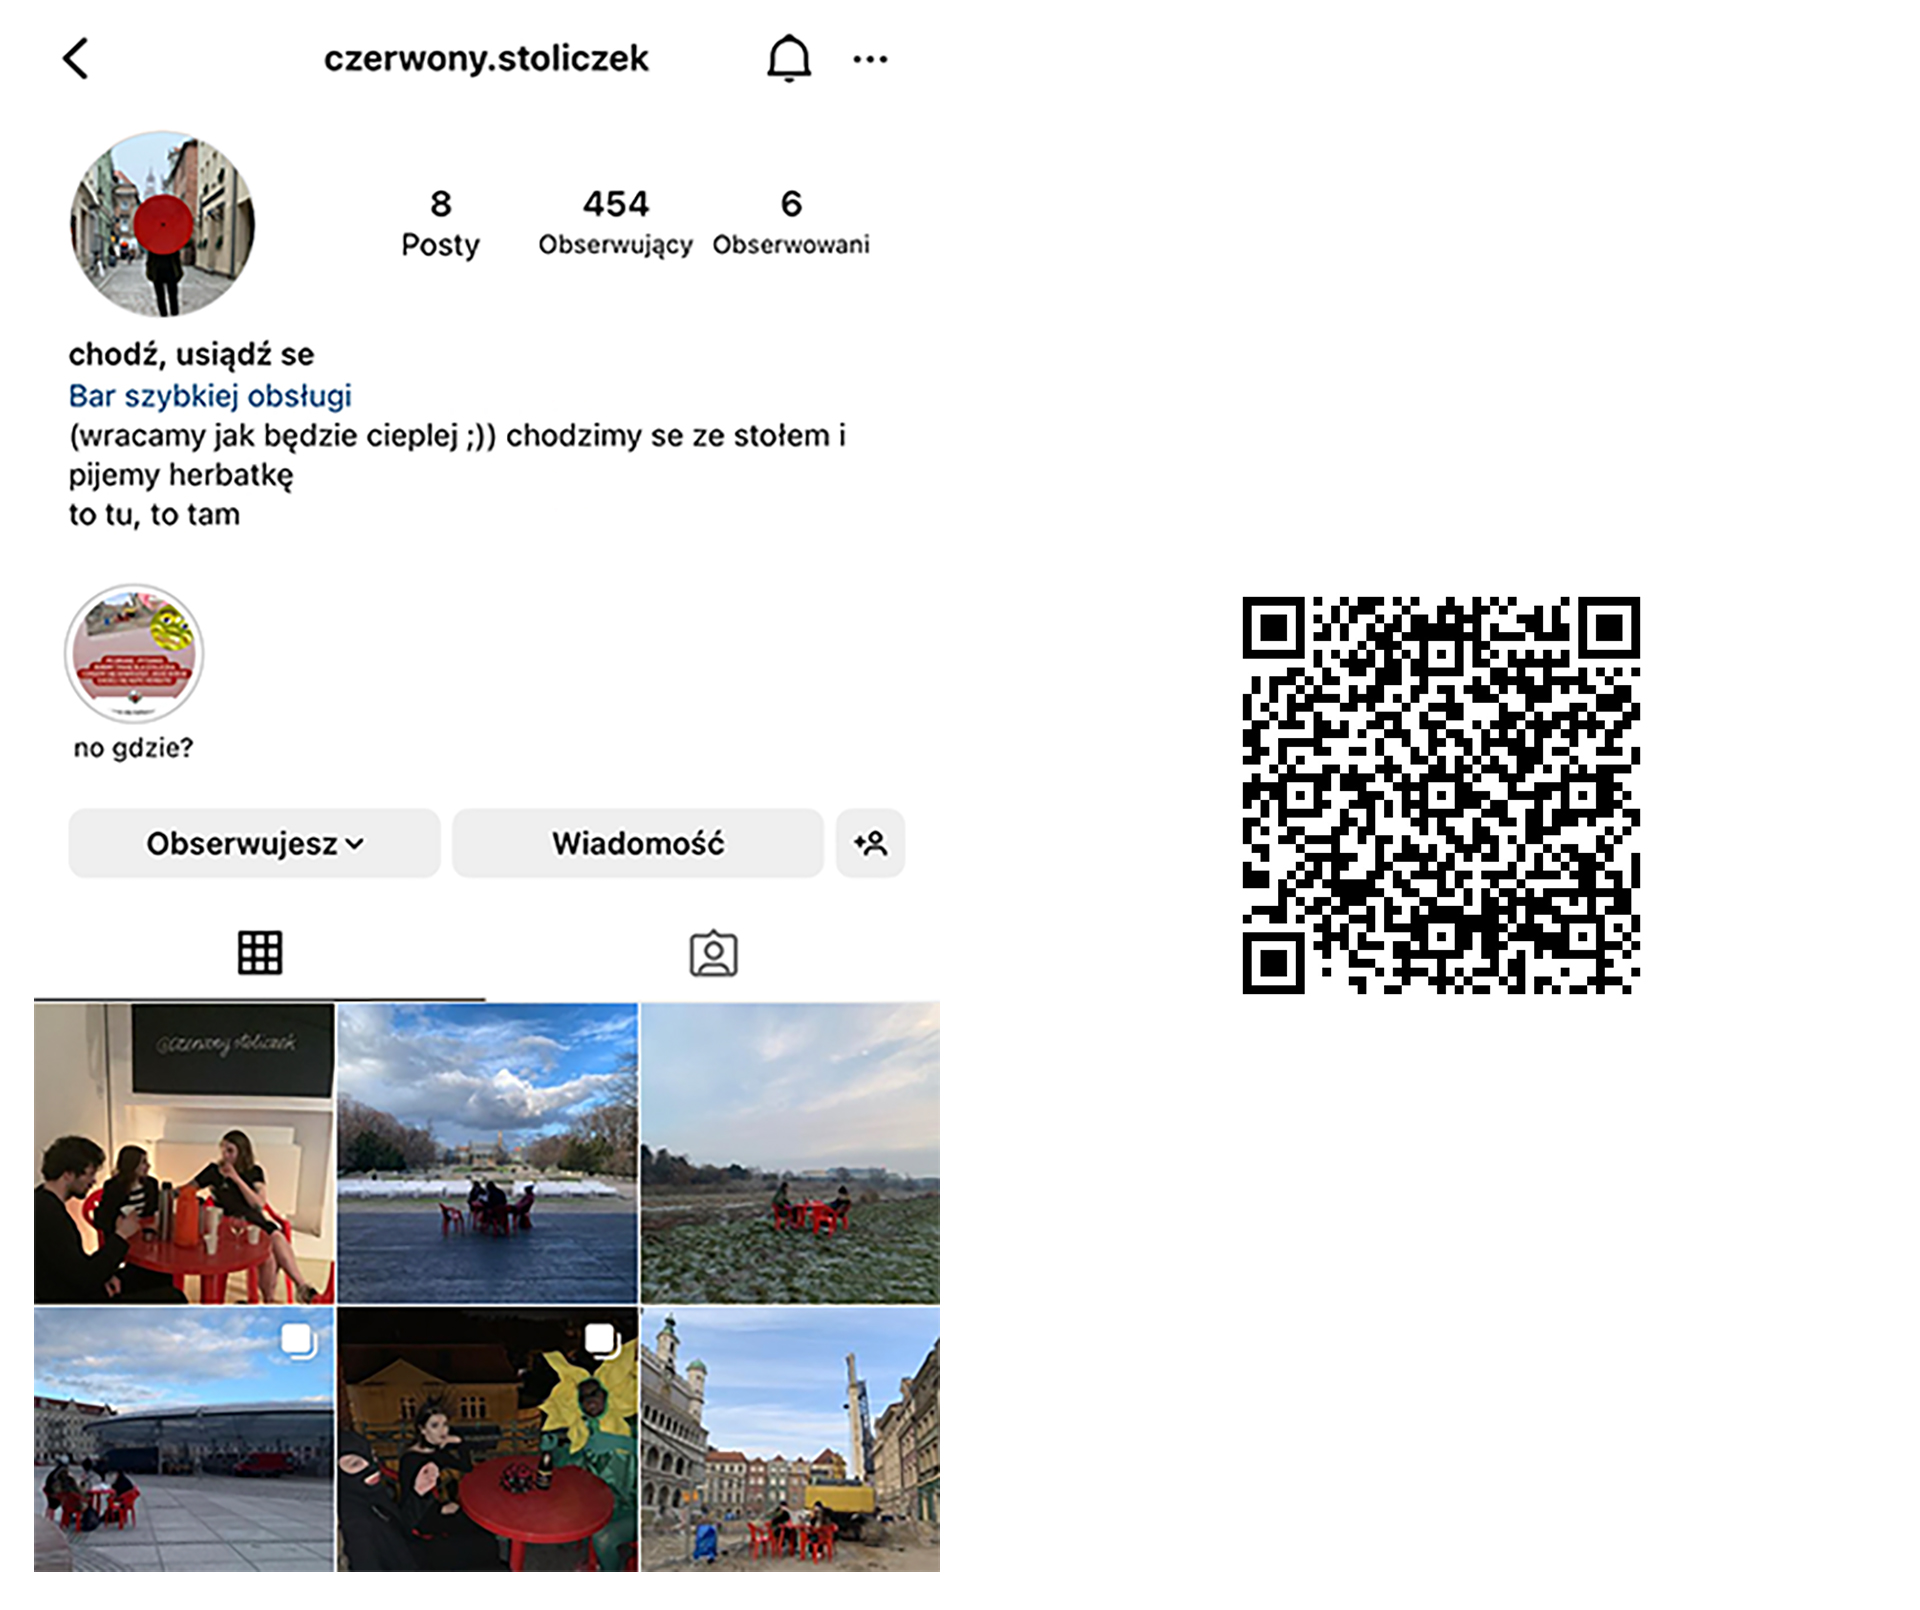 Screenshot z platformy instagram Czerwony stoliczek, obok zamieszczony kod QR przenoszący do instagrama. 